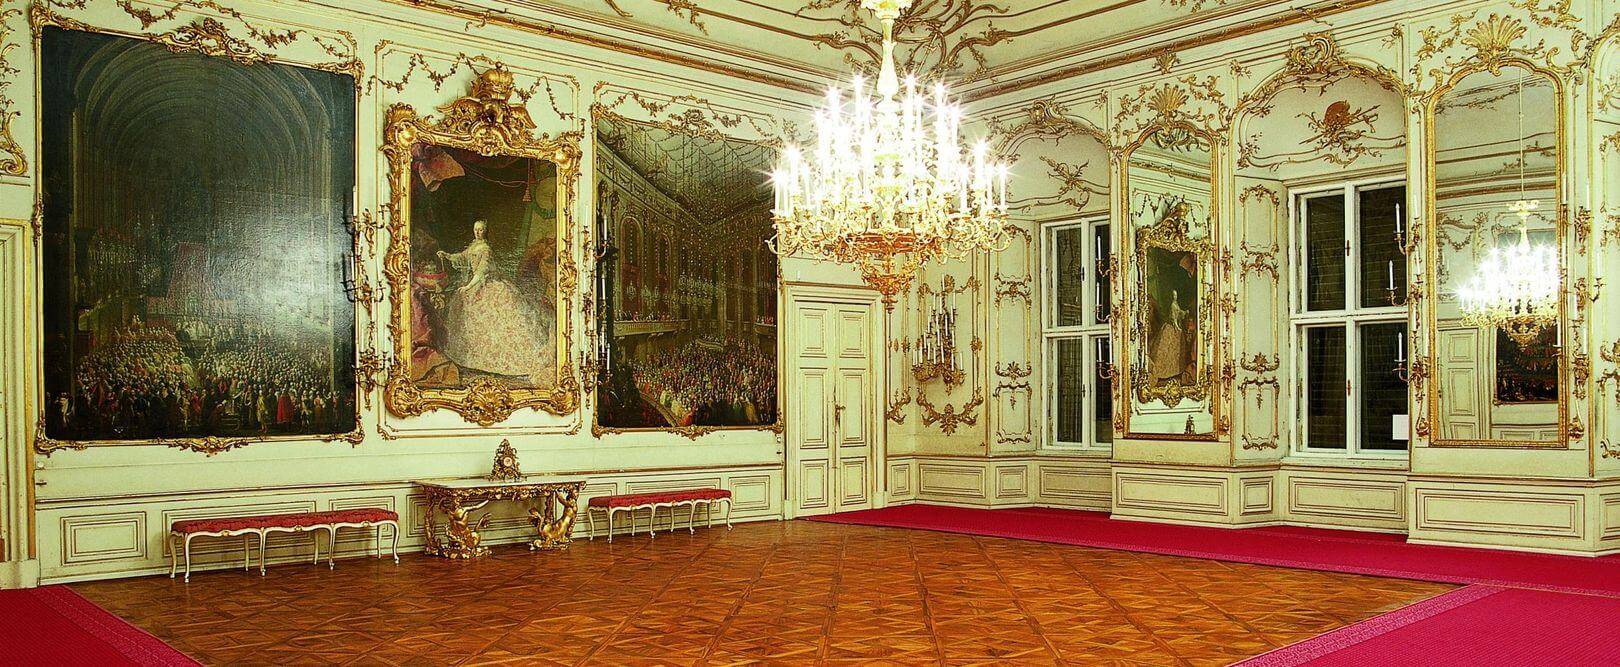 欧洲宫殿内部布局图图片